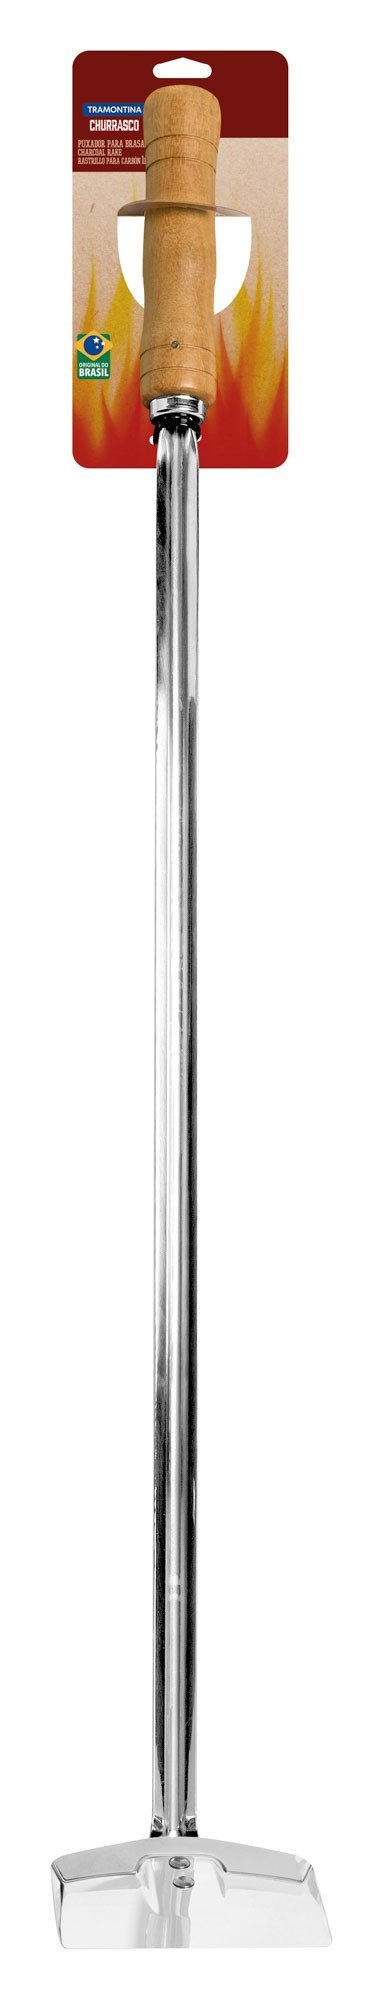 Puxador para Brasas Churrasco com Lâmina em Aço Inox e Cabo de Madeira 72,7 cm